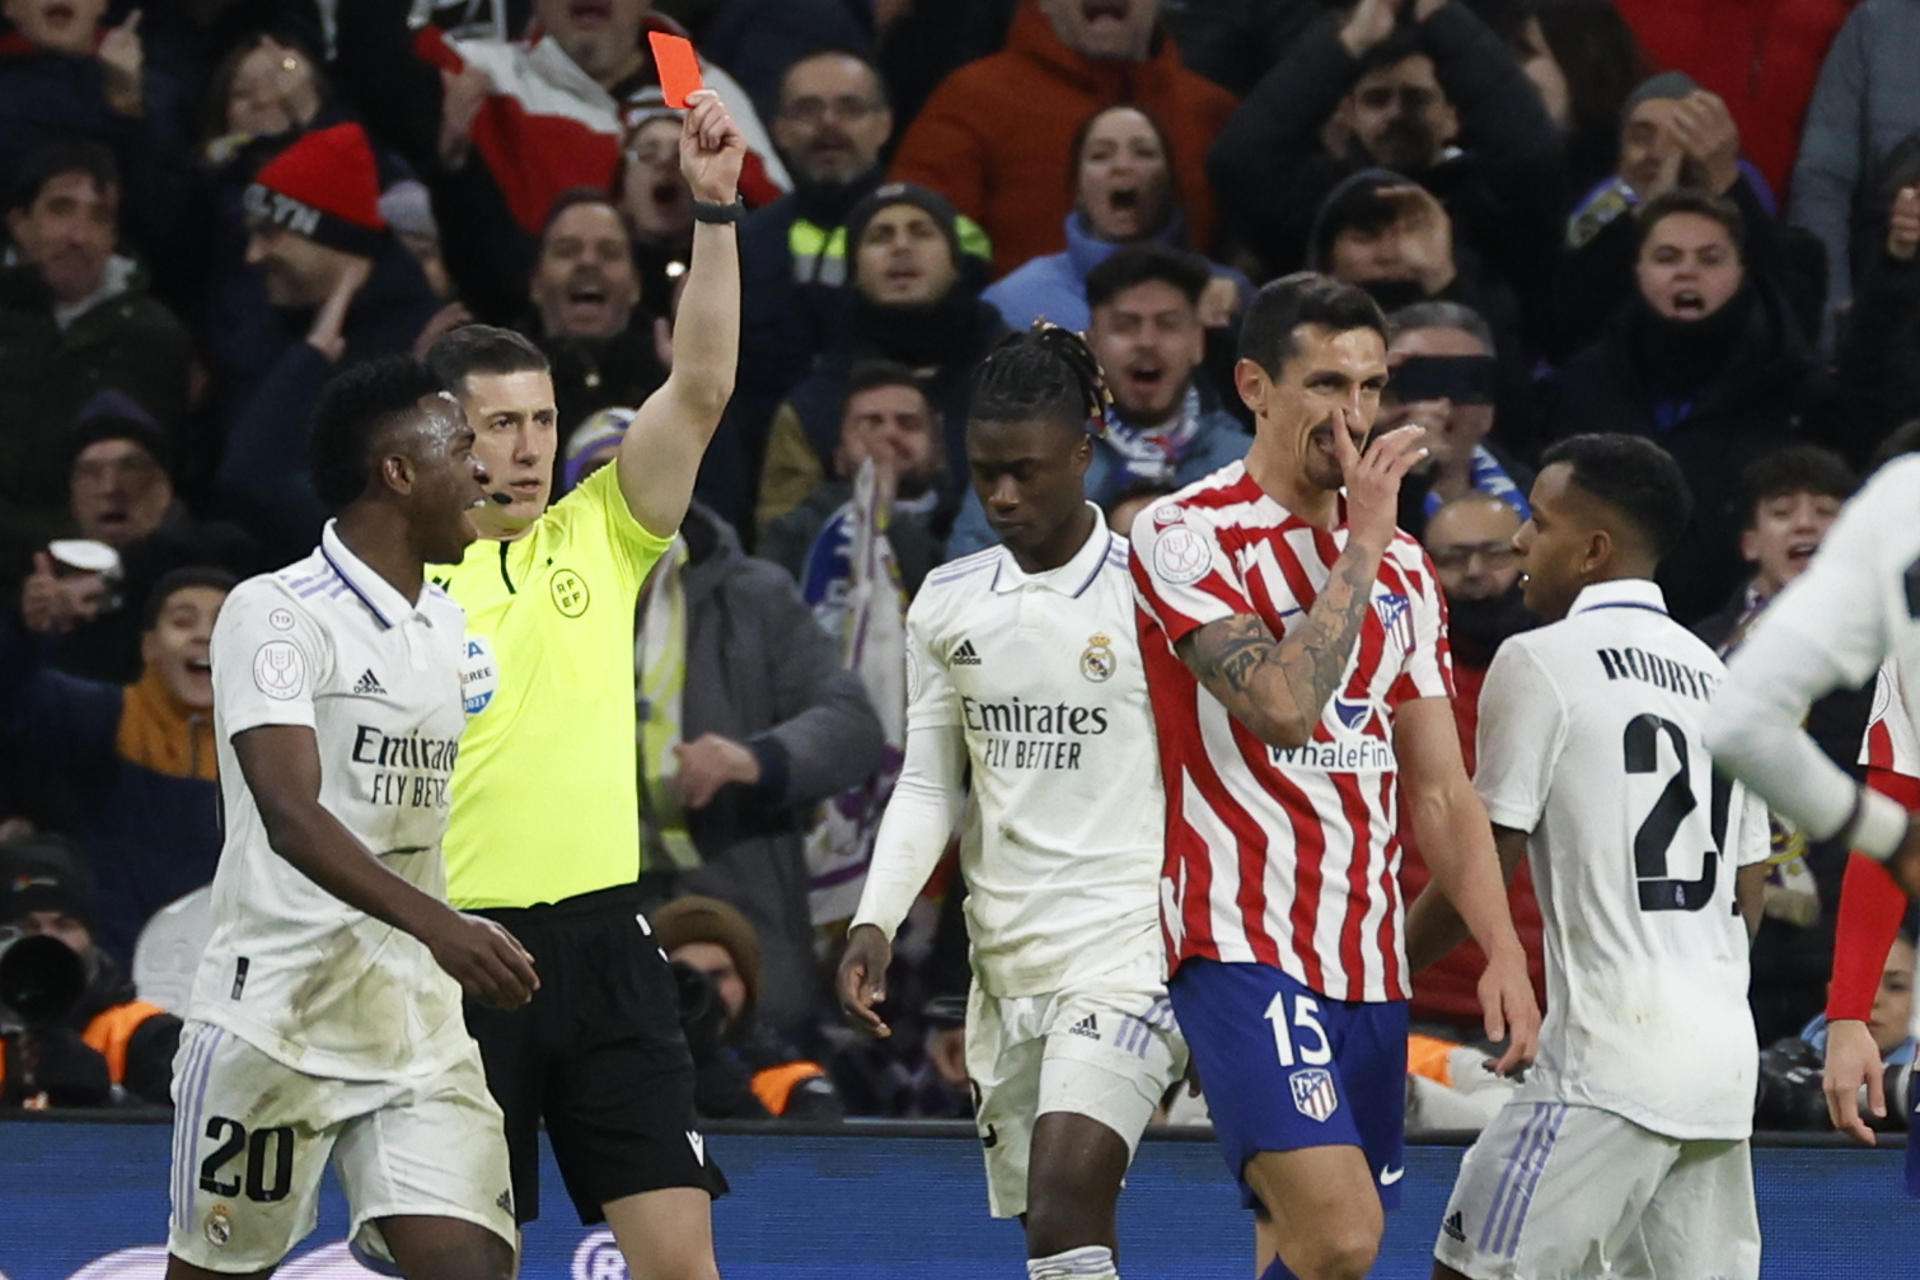 El árbitro César Soto saca tarjeta roja a Savic en un Real Madrid-Atlético de Madrid. EFE/ Juanjo Martin